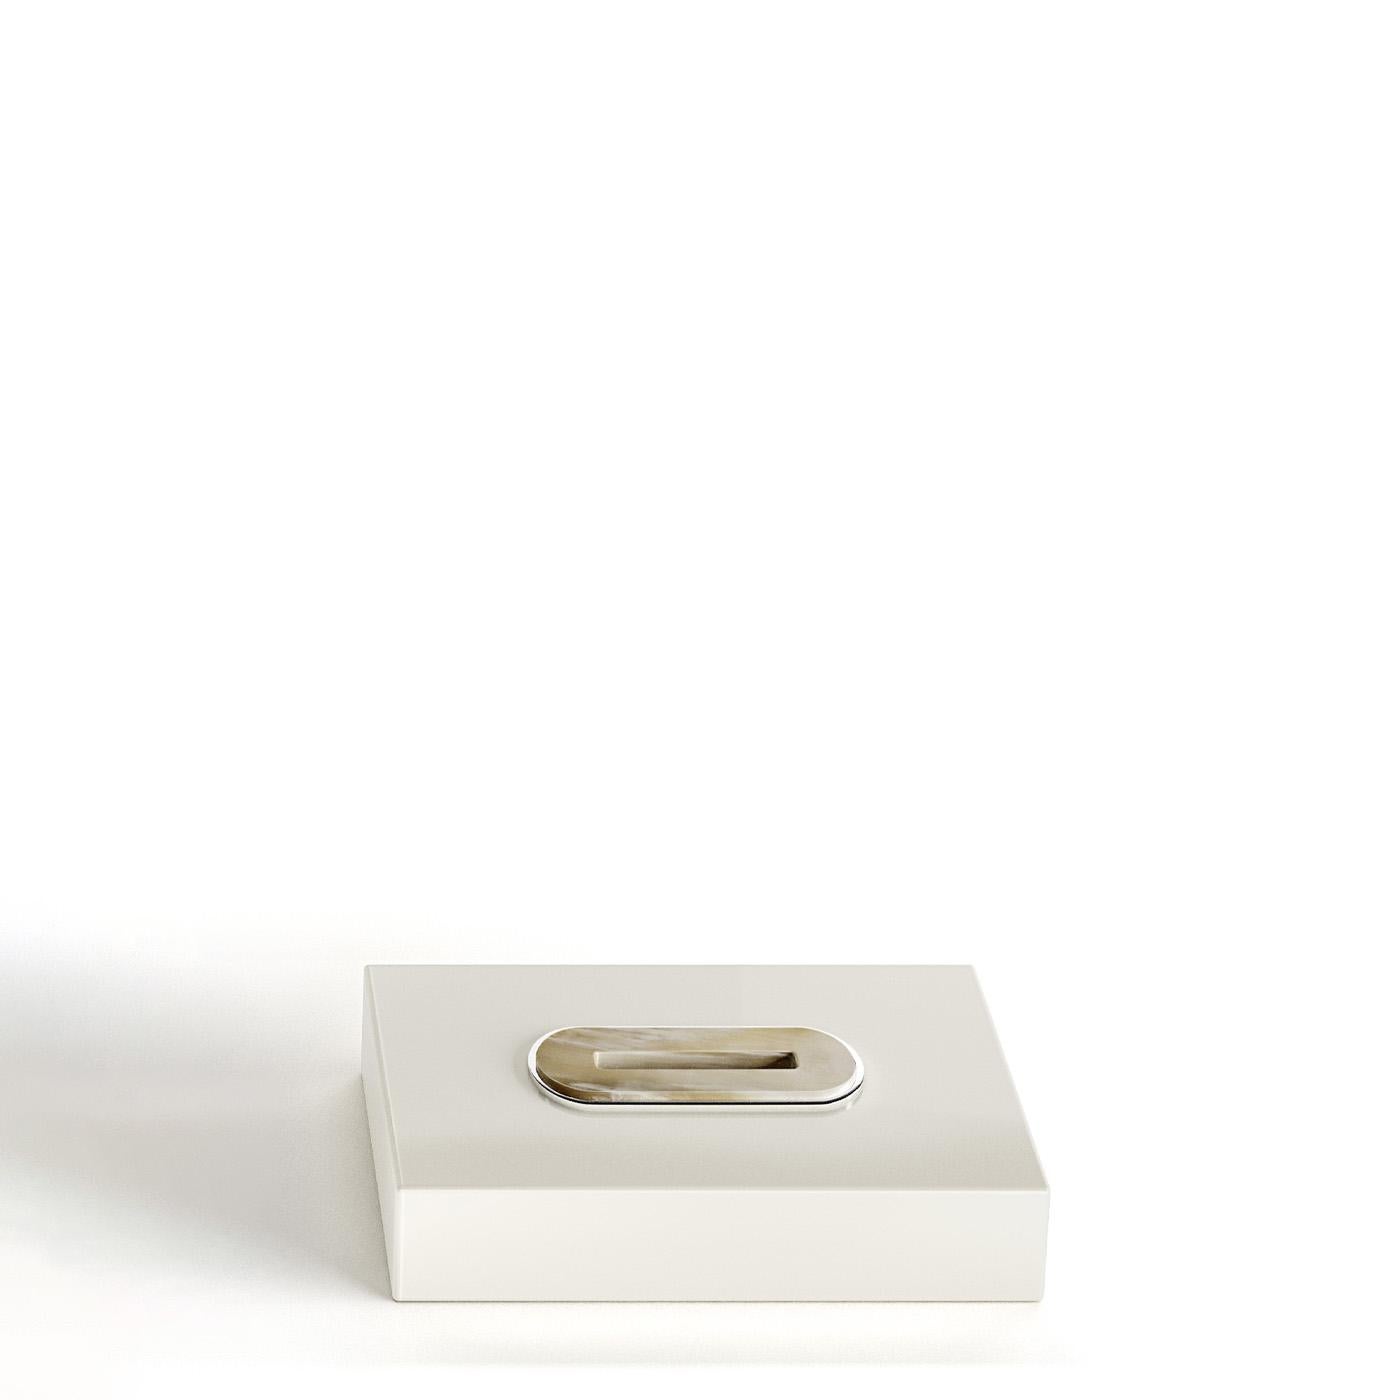 Veletta Tissue Box Holder in Glossy Ebony and Corno Italiano, Mod. 2428 In New Condition For Sale In Recanati, Macerata